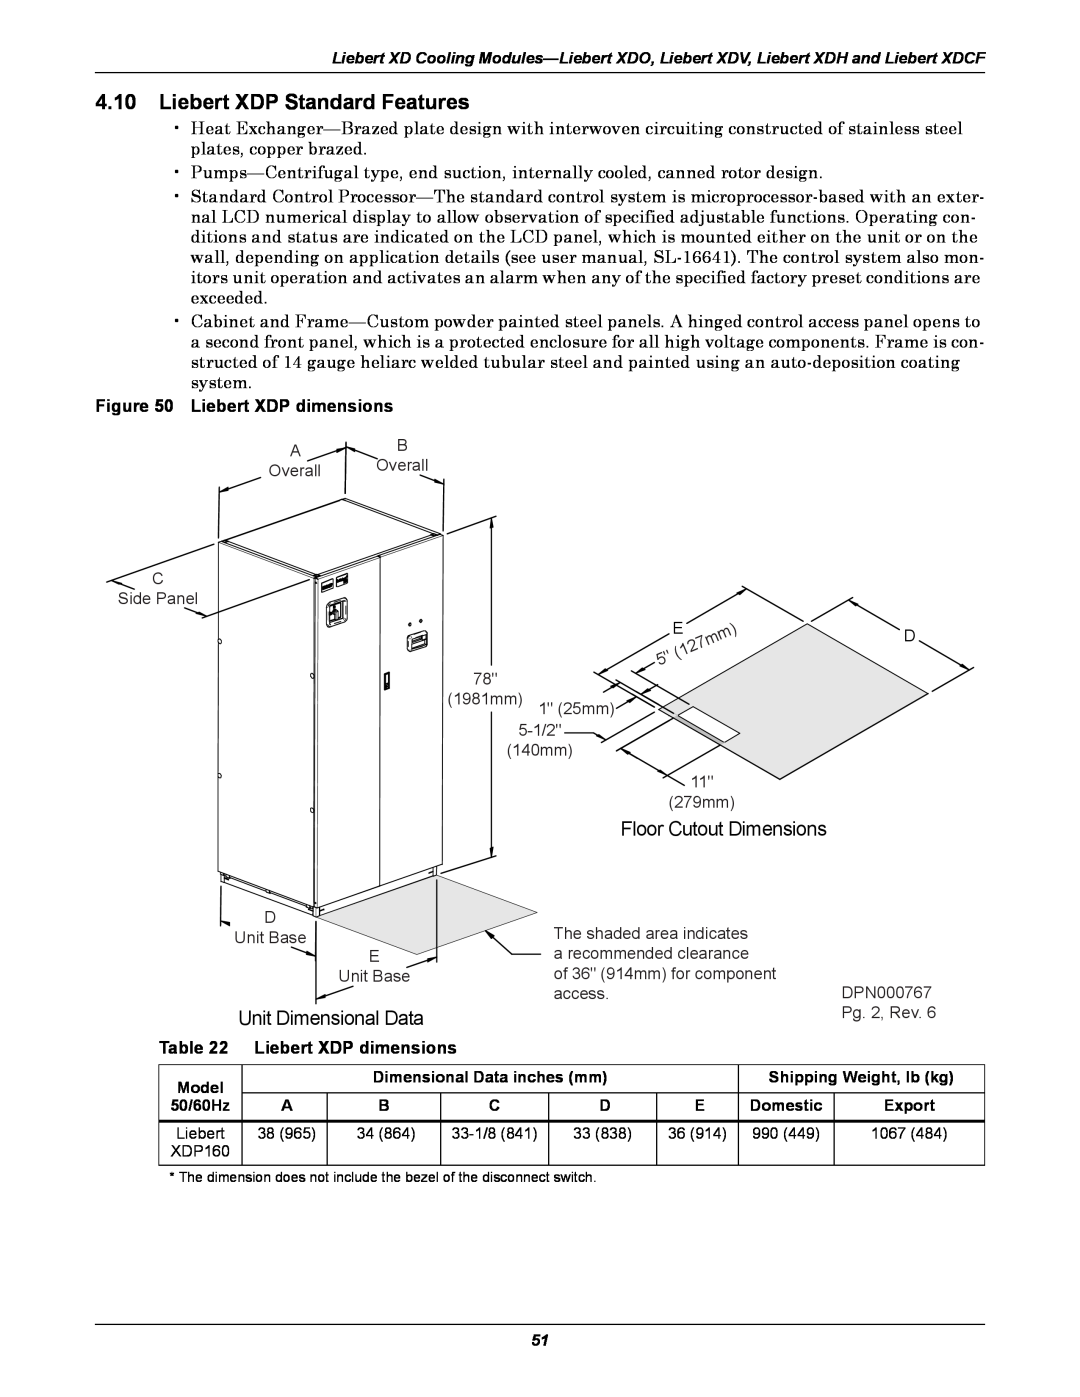 Emerson Xtreme Density manual Liebert XDP Standard Features, Unit Dimensional Data, Liebert XDP dimensions 